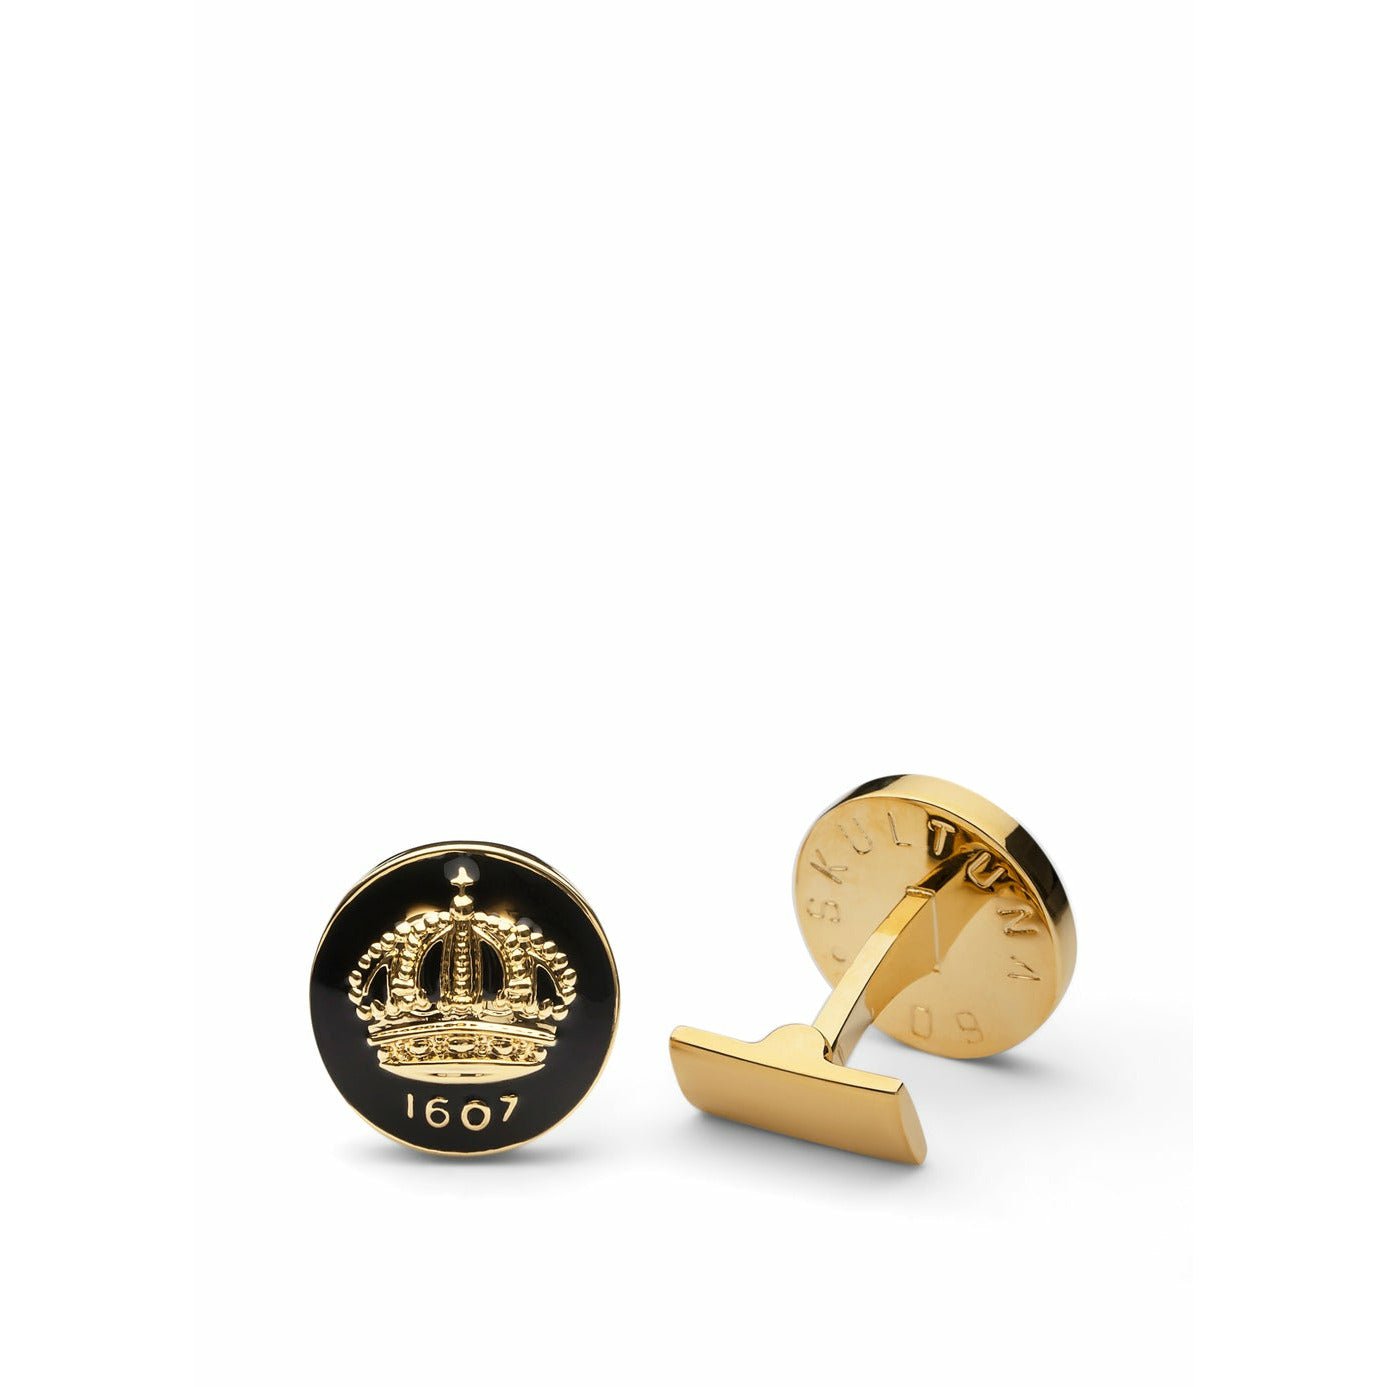 Skultuna Crown Gold Manschettenknopf ø1,7 Cm, Barock Schwarz